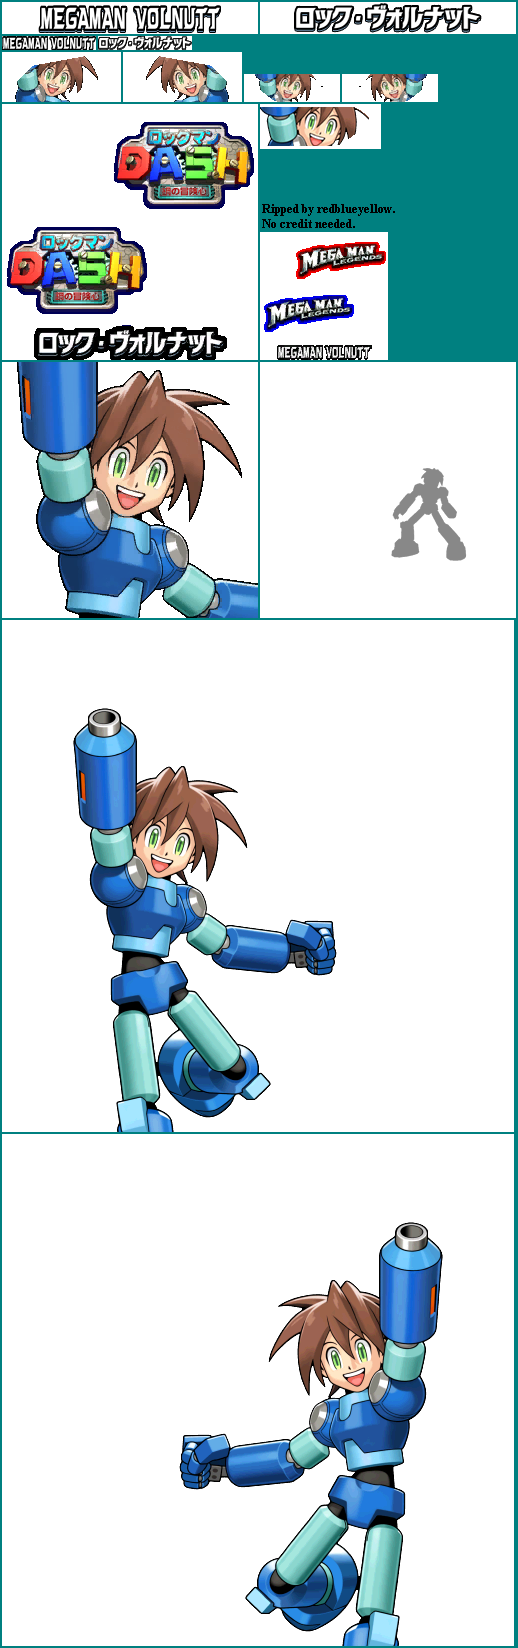 Tatsunoko vs. Capcom - Mega Man Volnutt